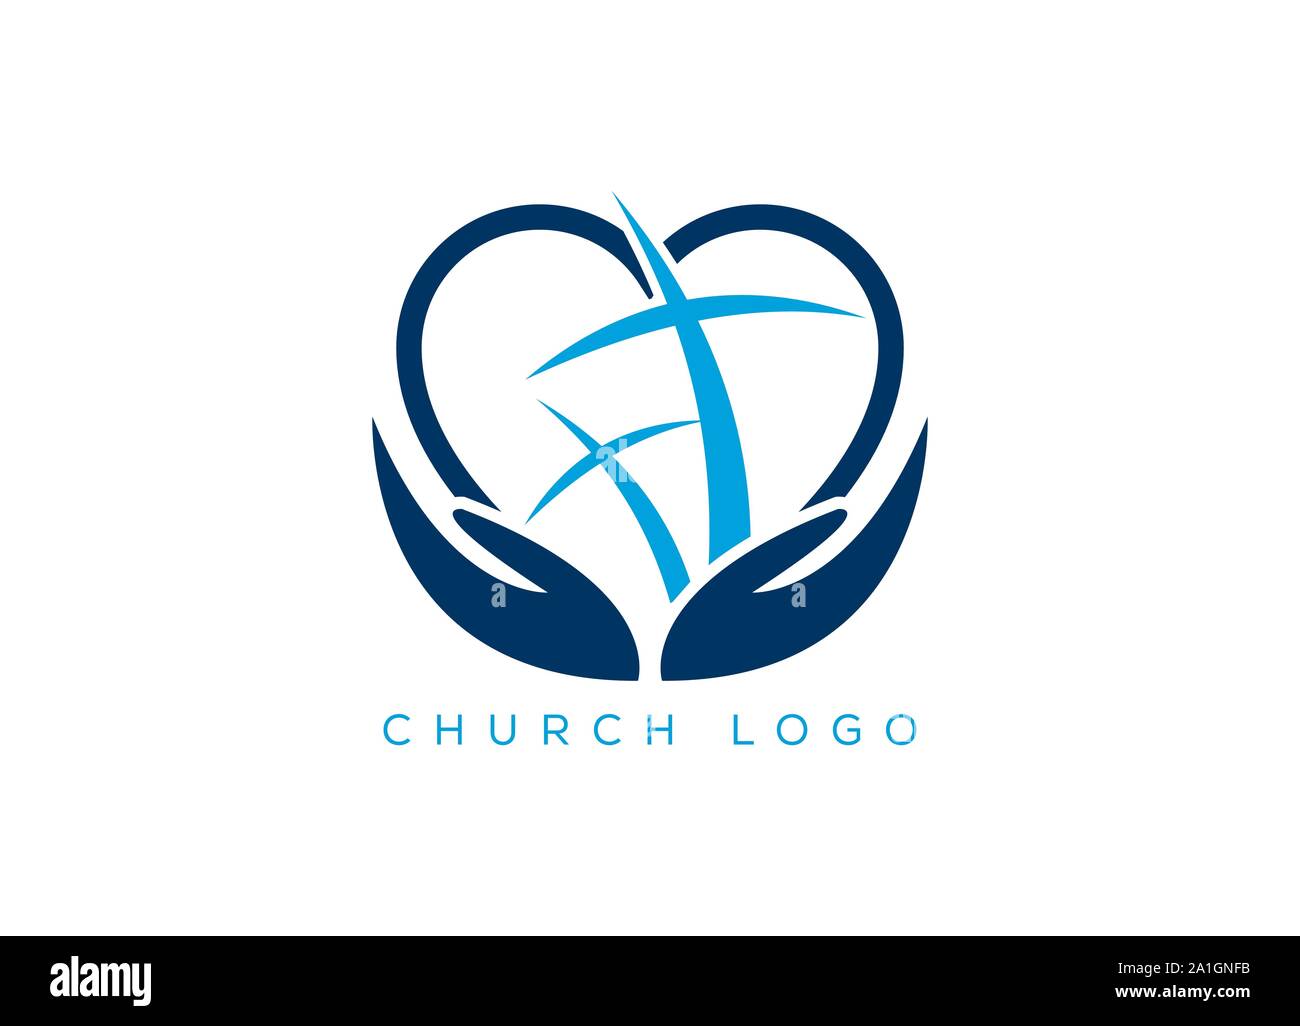 Kirche Logo. Christliche Symbole. Das Kreuz Jesu, Vorlage logo für Kirchen und christliche Organisationen Kreuz von Golgatha in der Sonne. Stock Vektor